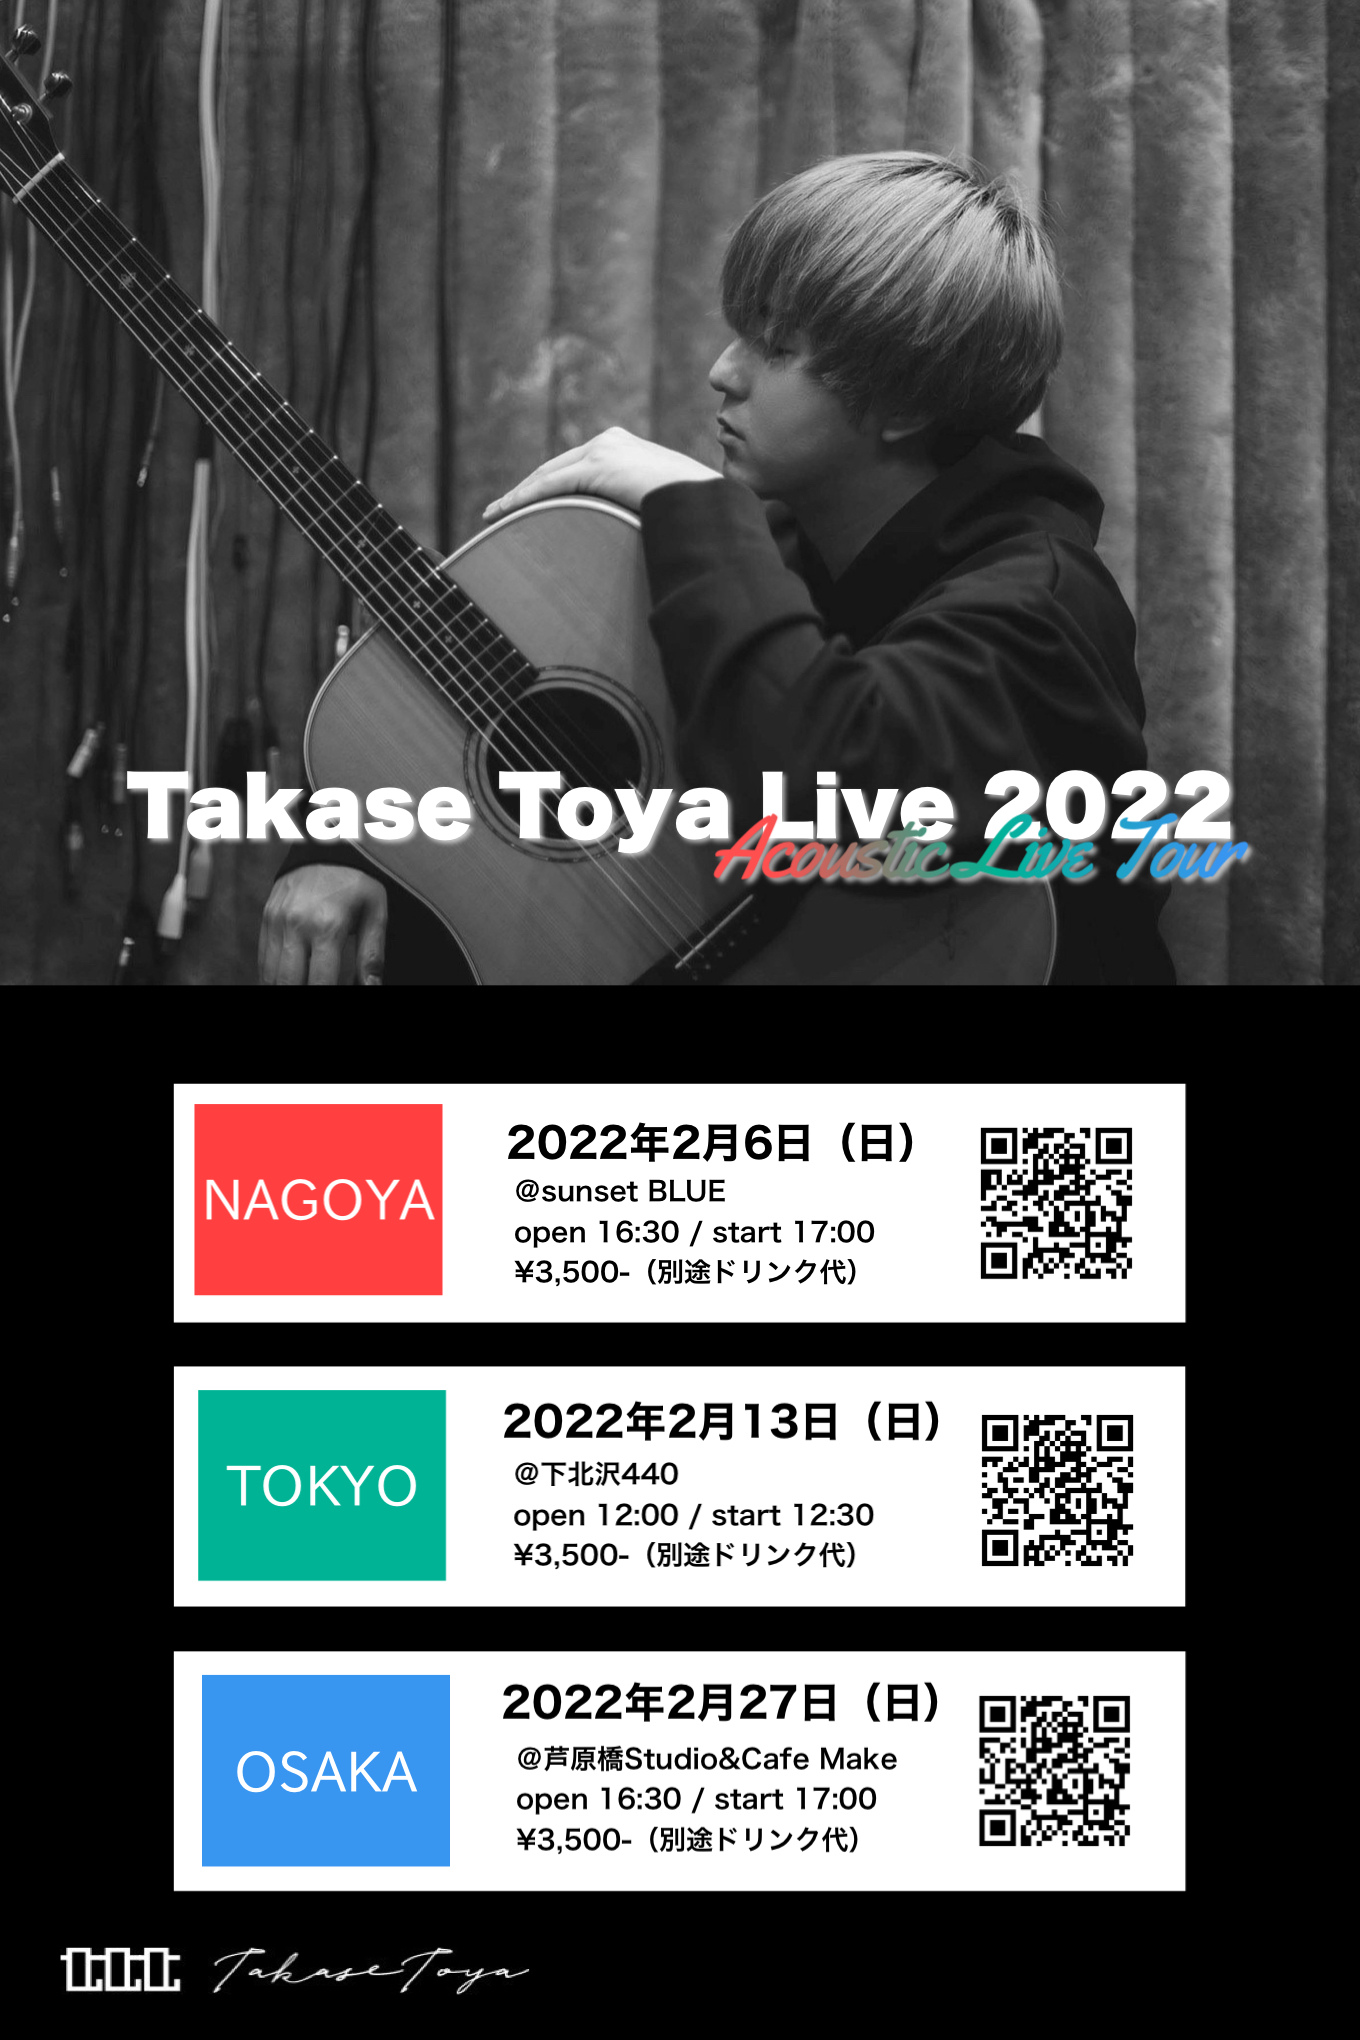 Takase Toya Live 2022【NAGOYA】一般